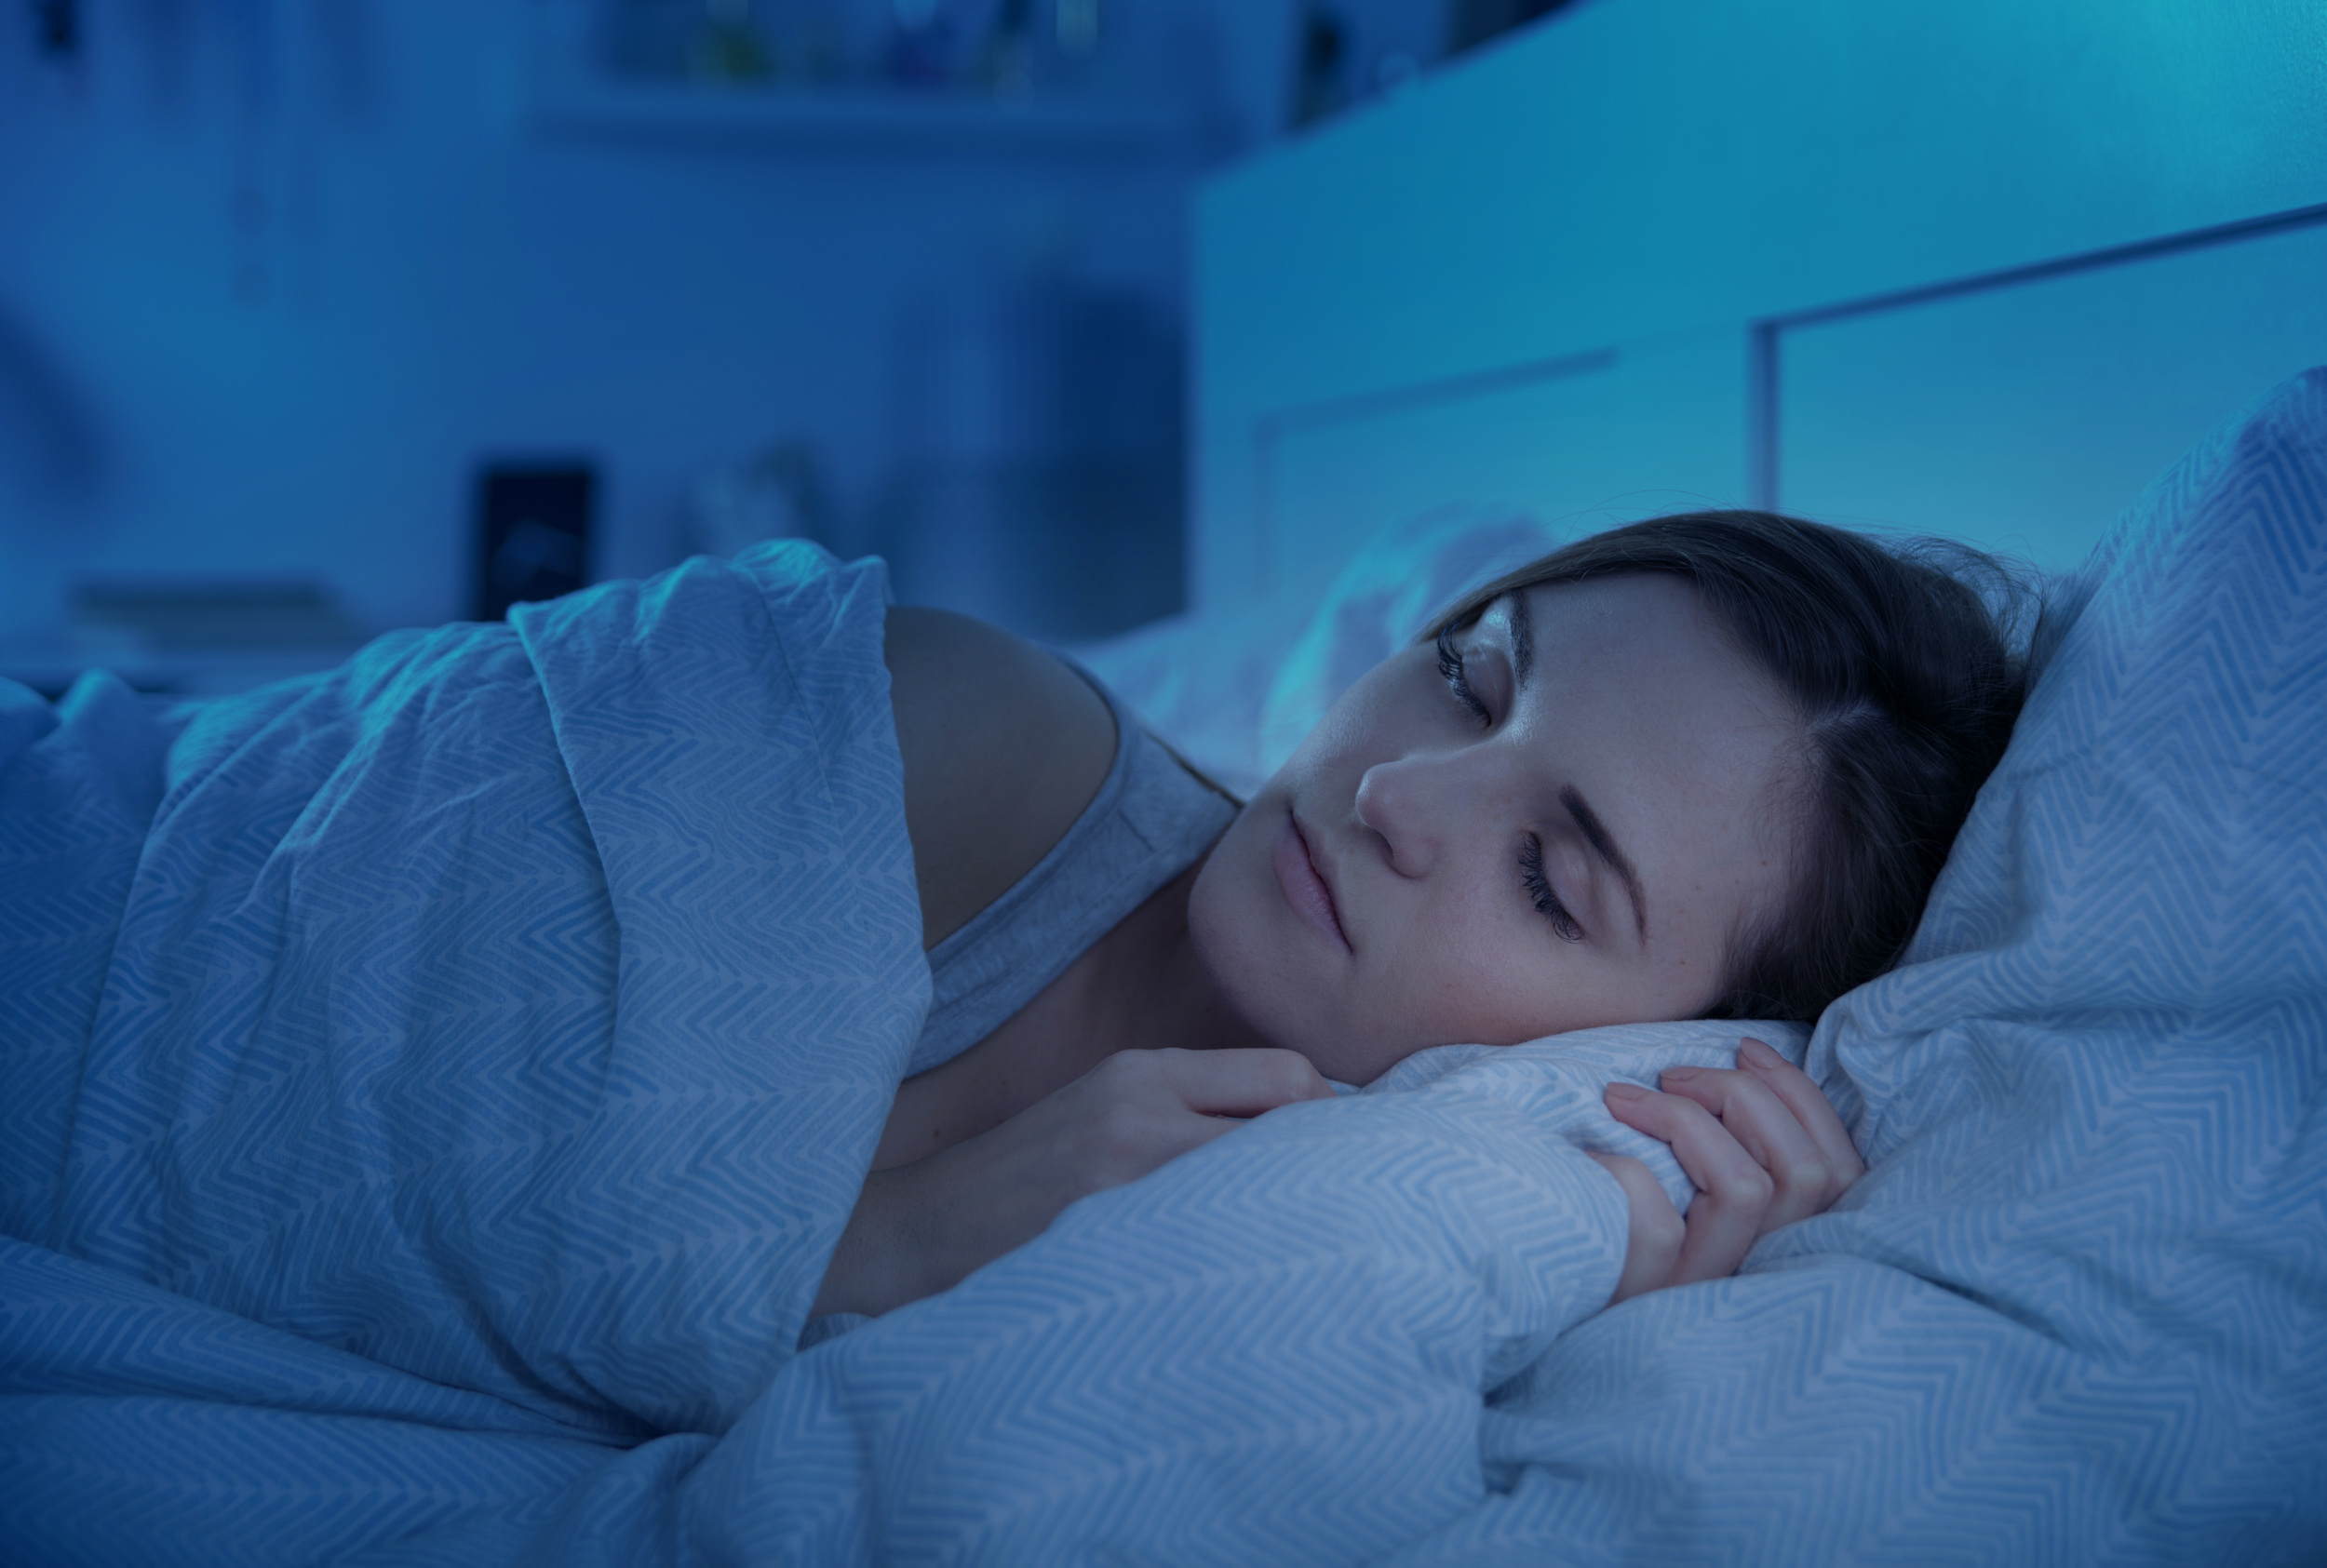 sleep apnea and TMJ can negatively affect sleep